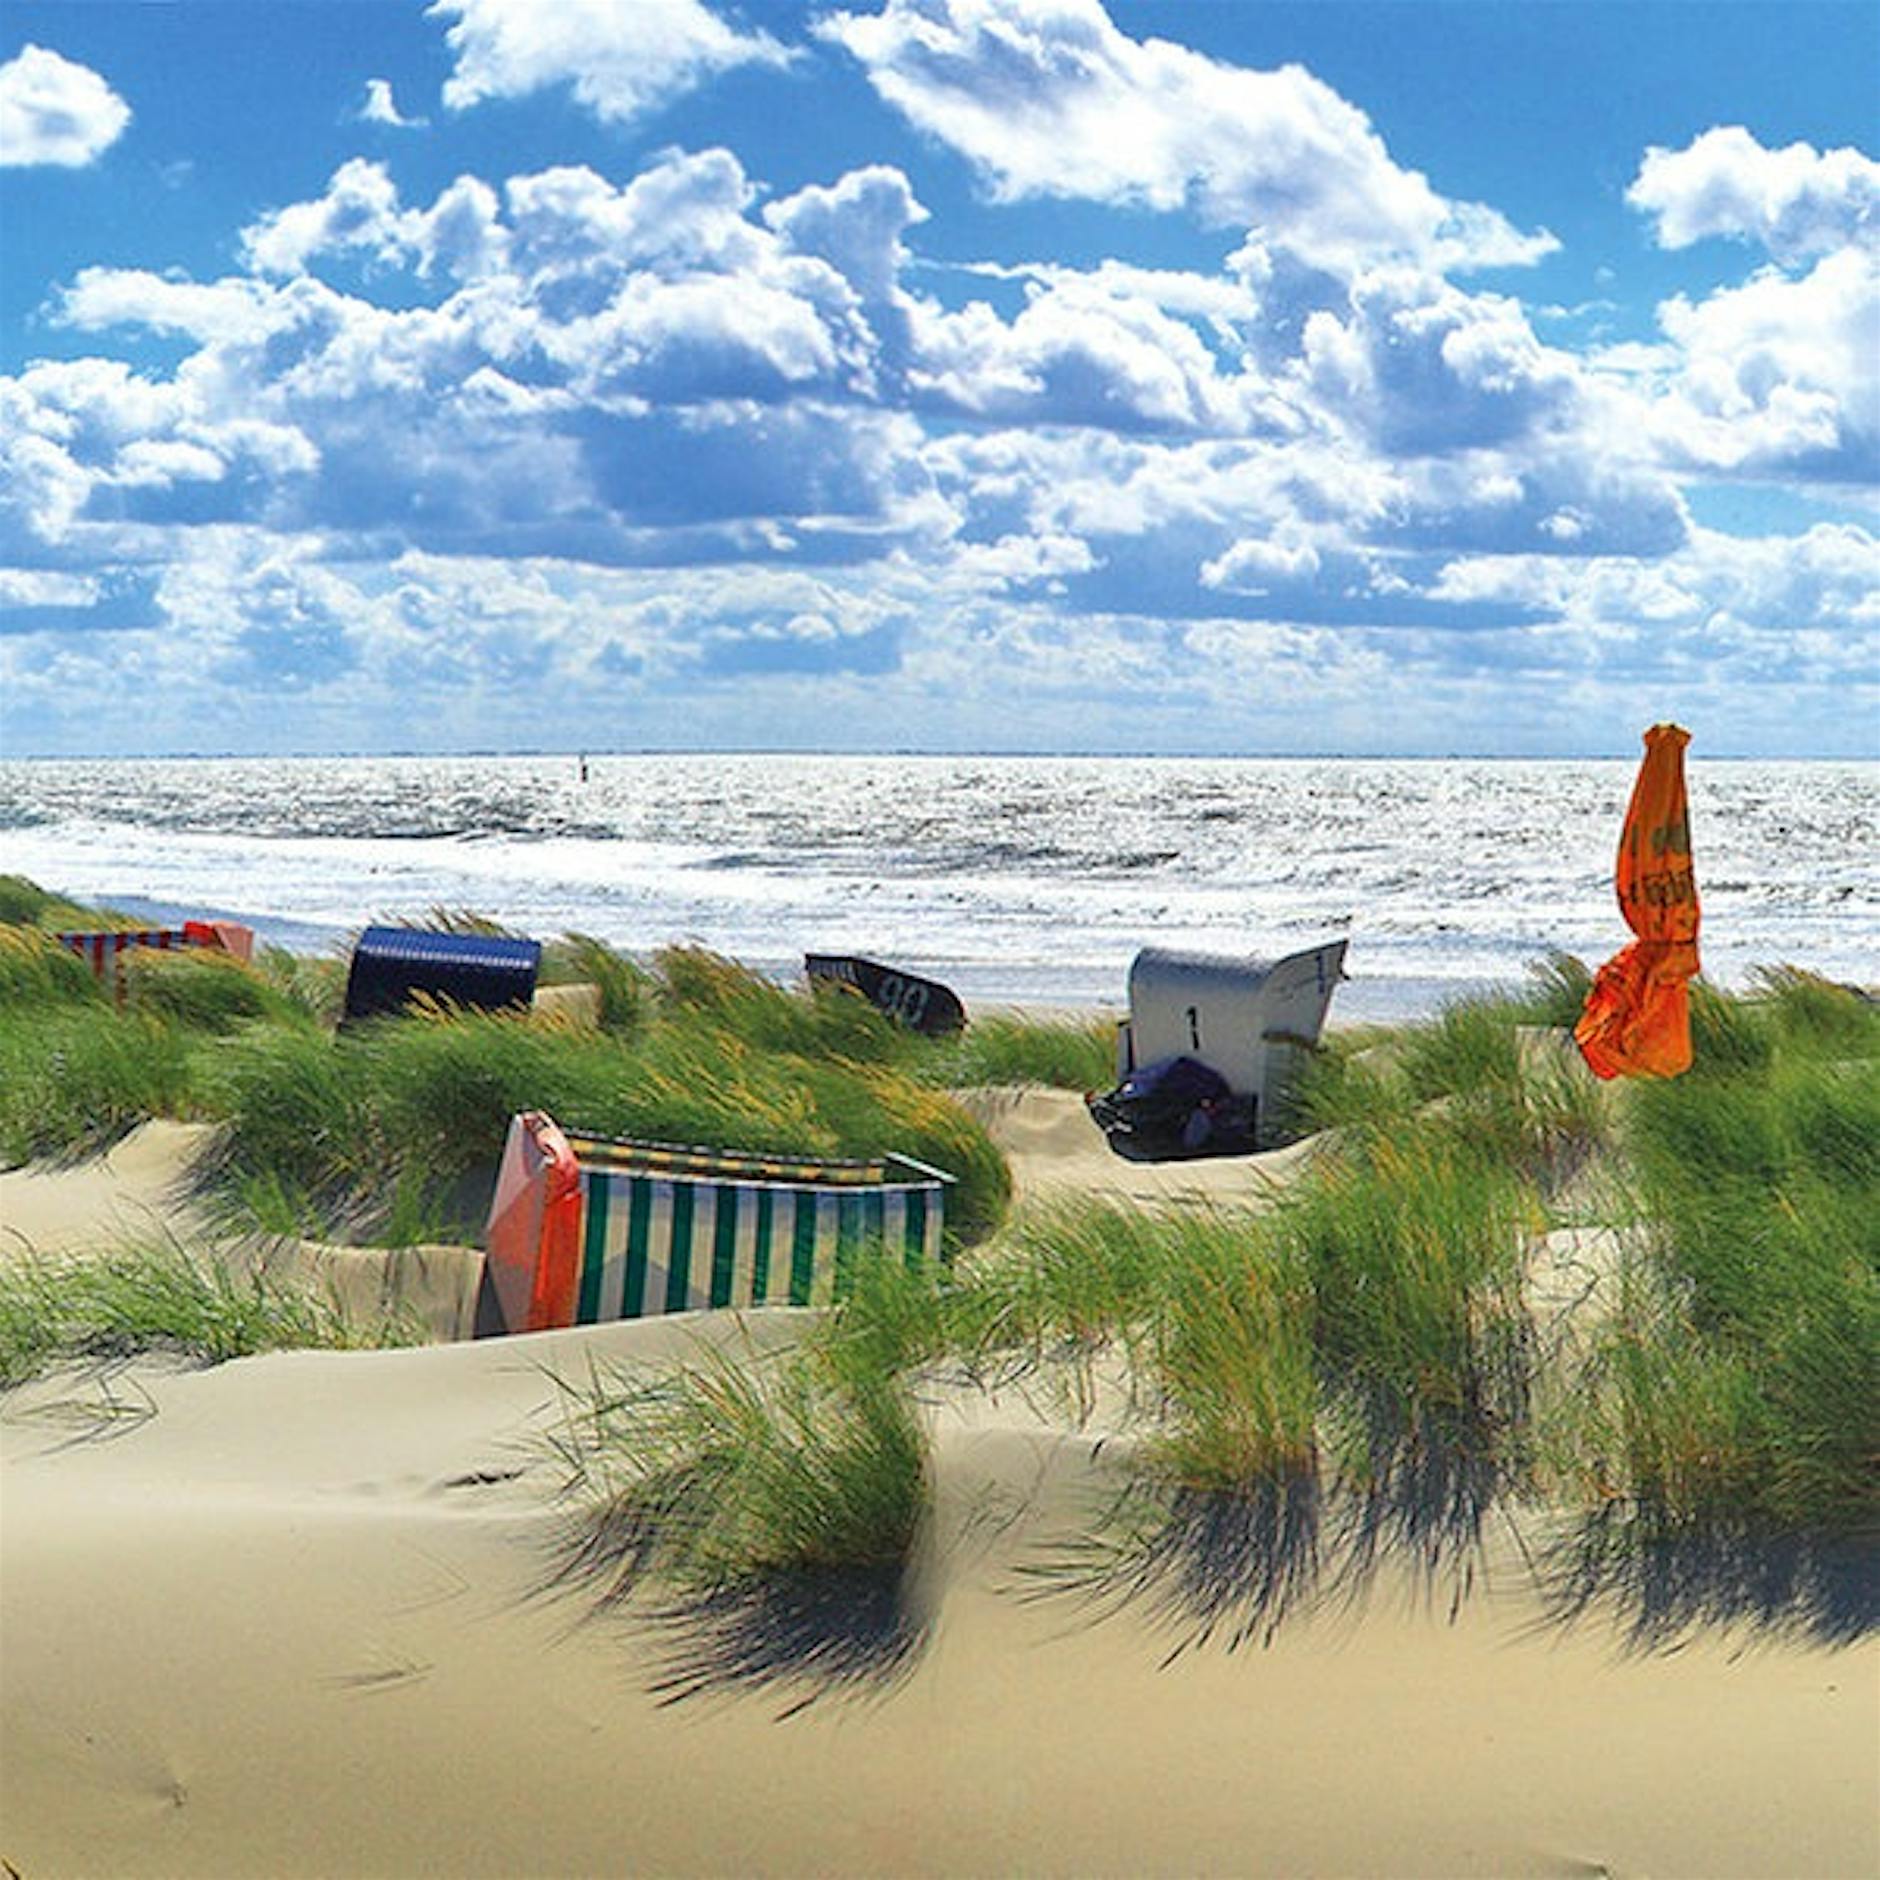 Image - Ferien 2020: 15 Tipps für den Nordsee-Urlaub